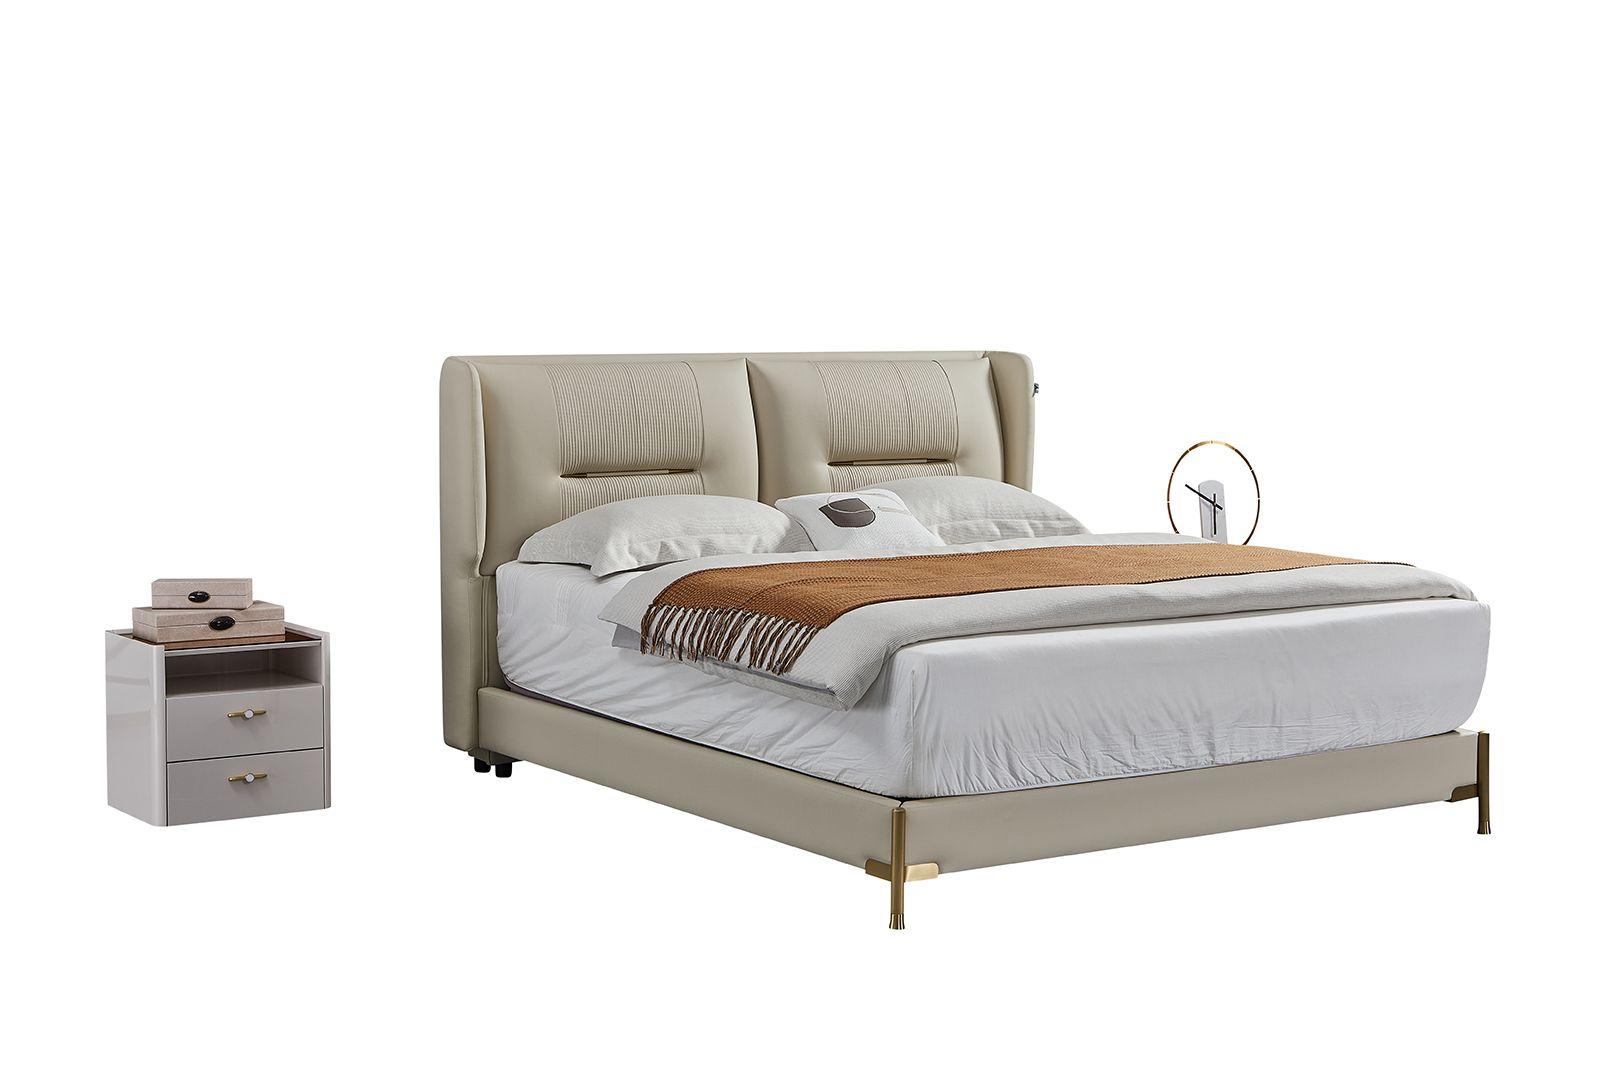 

    
American Eagle Furniture B-Y2012-CK / NS-Y2012 Platform Bedroom Set Gray B-Y2012-CK-3PC
